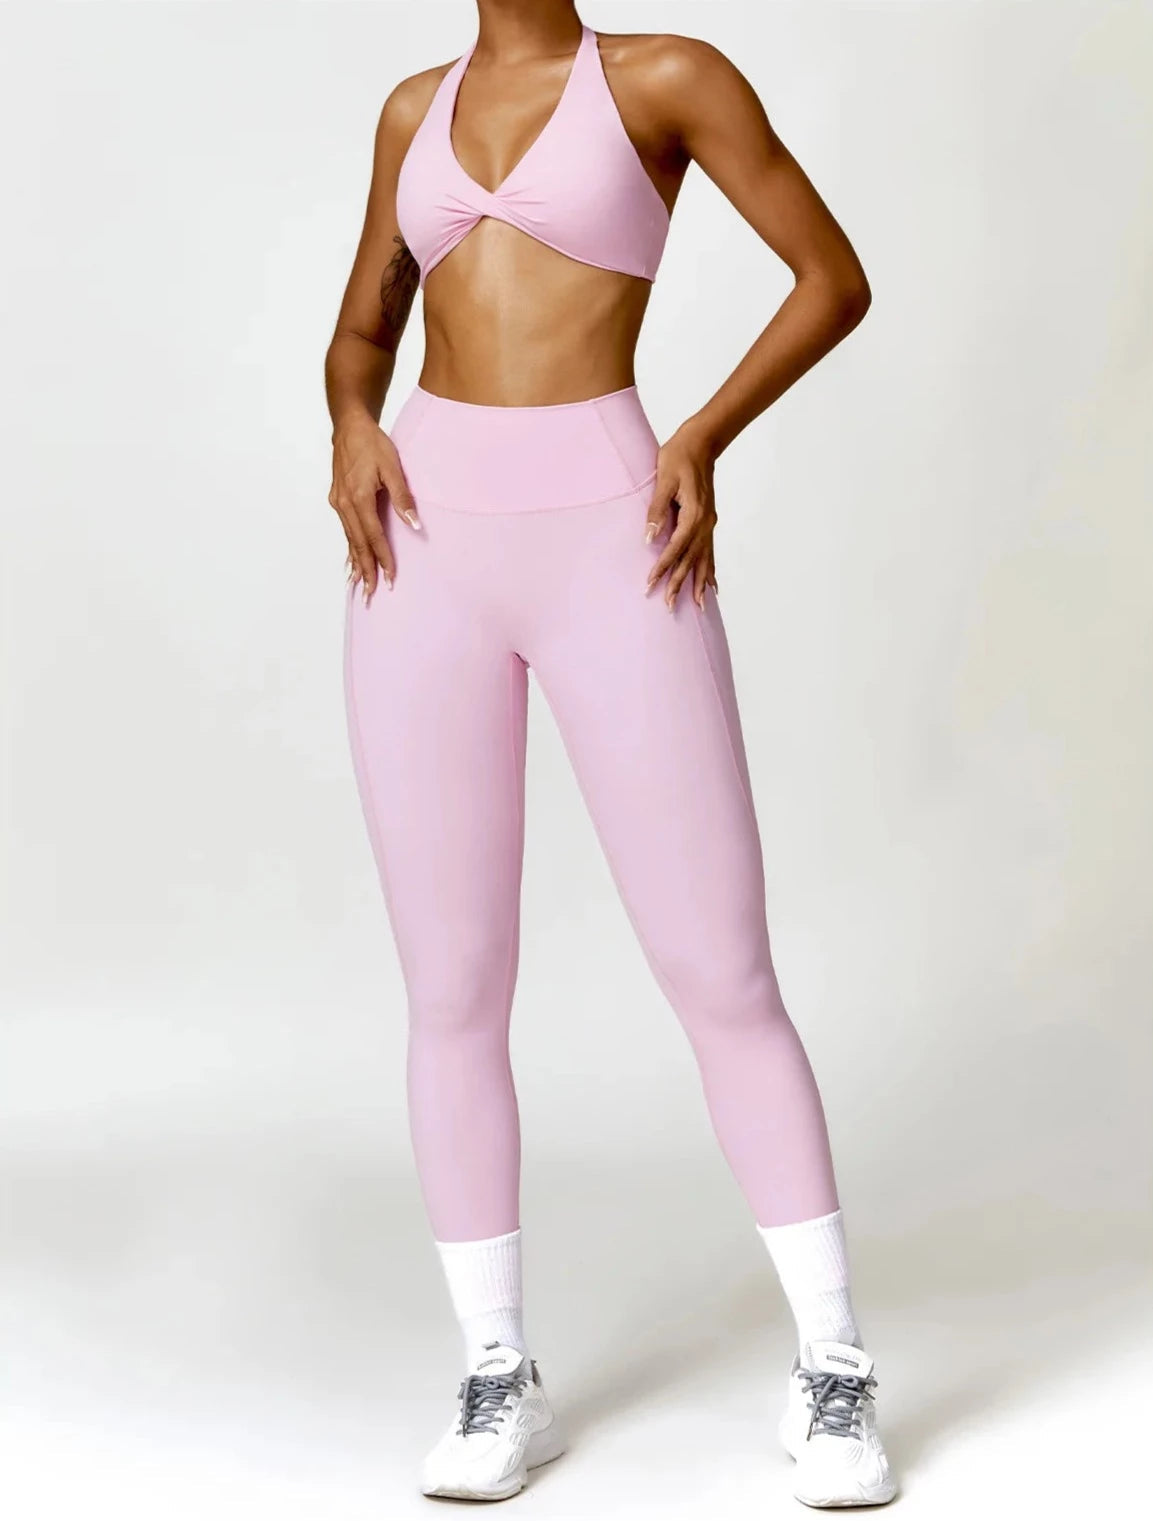 Glam Flow Yoga Set - Leggings + Top Sets Starlethics Pink S 